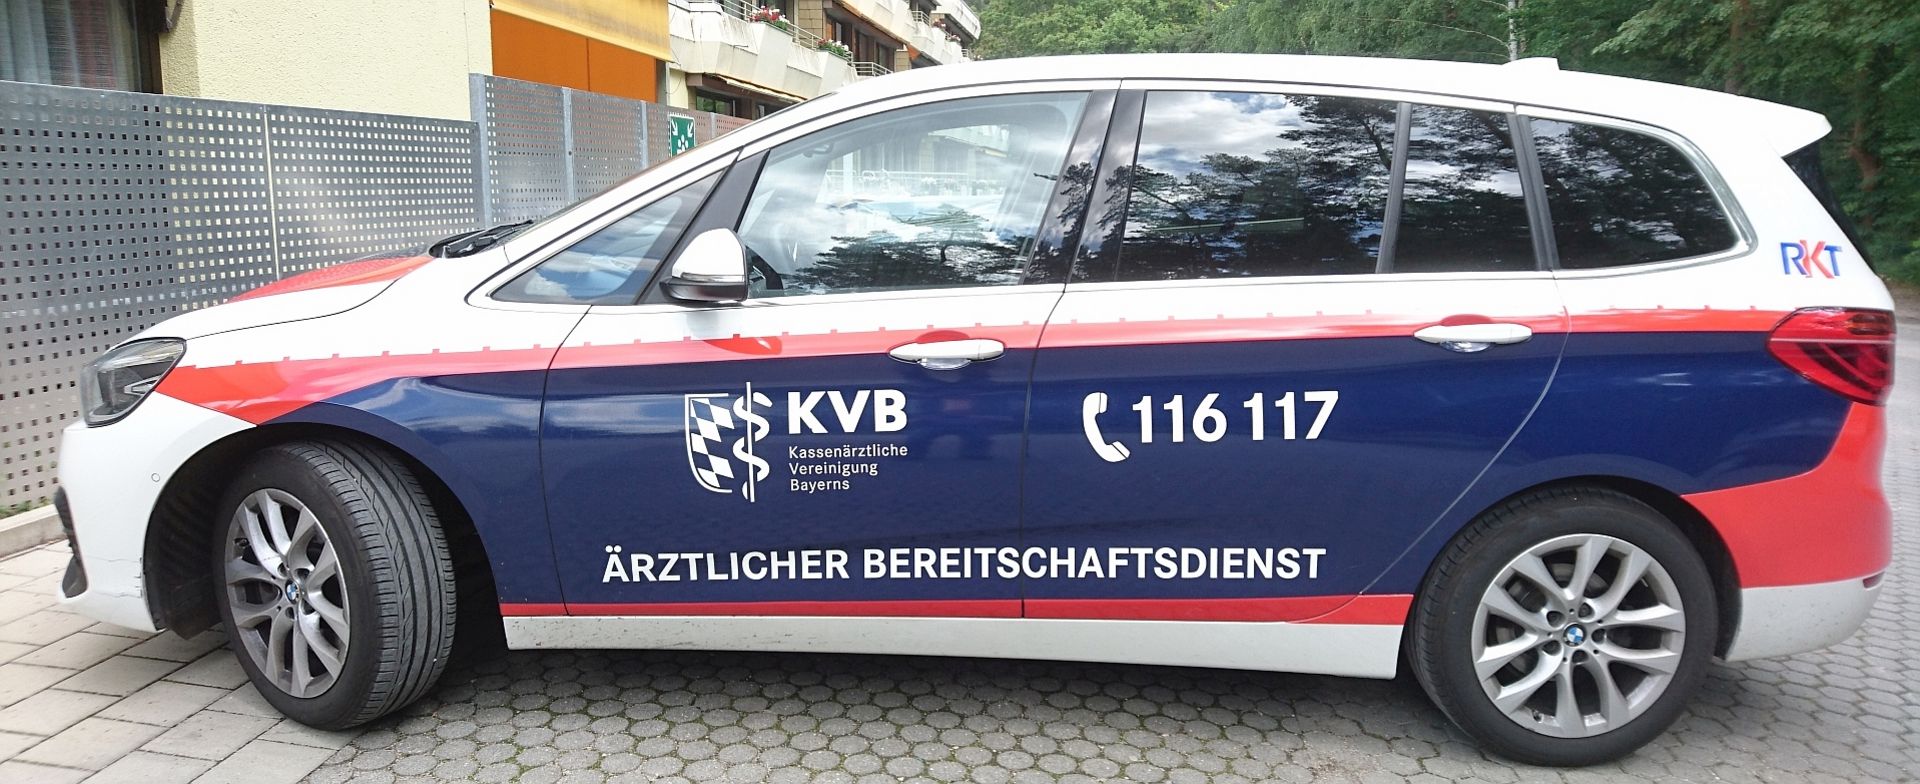 Arztlicher Bereitschaftsdienst Bayerisches Rotes Kreuz Brk Kreisverband Erlangen Hochstadt